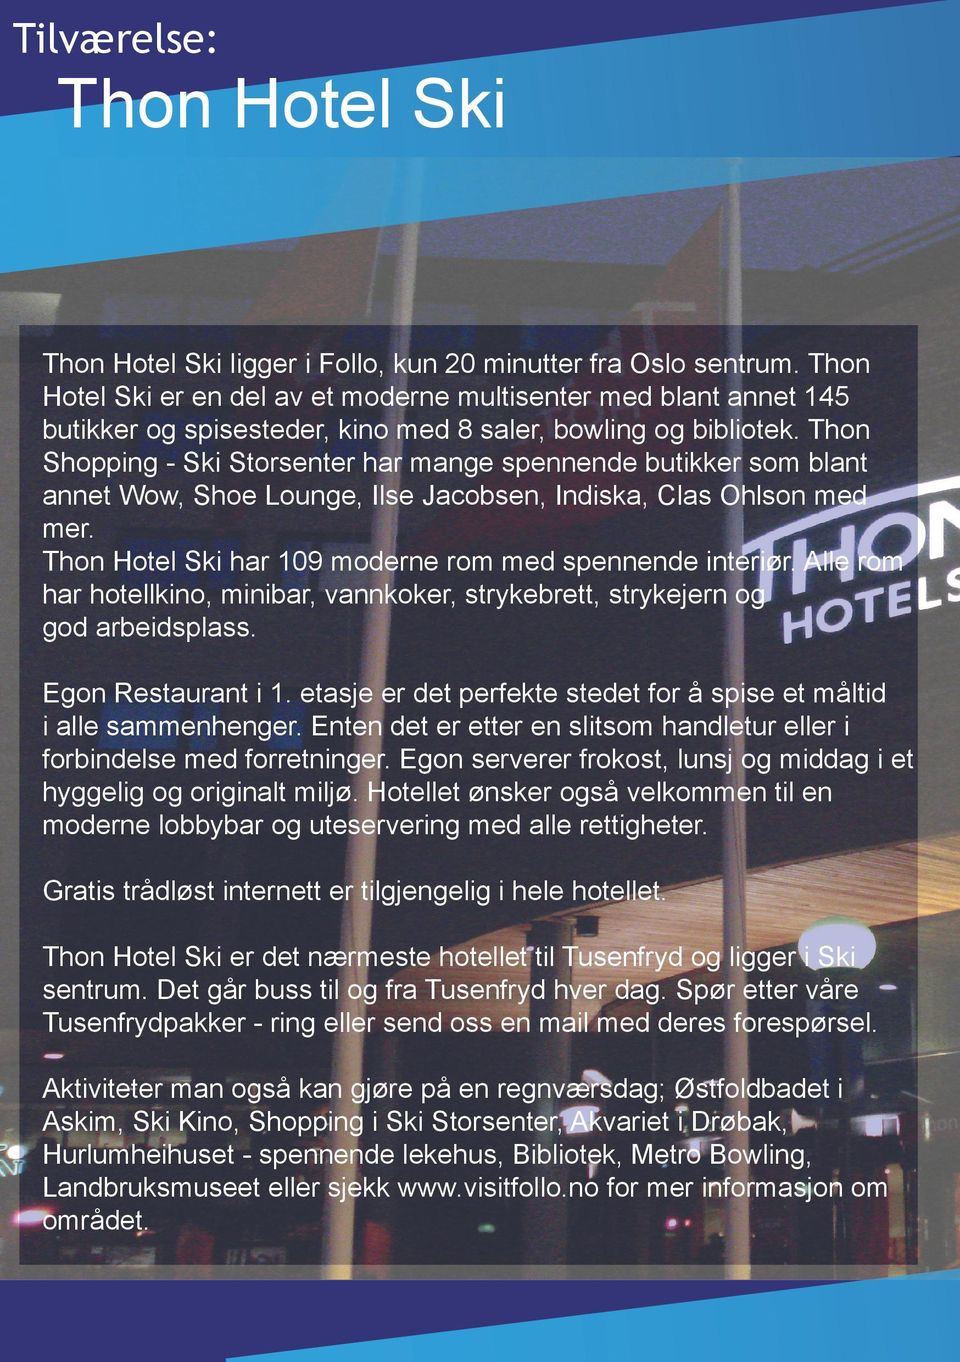 Thon Shopping - Ski Storsenter har mange spennende butikker som blant annet Wow, Shoe Lounge, Ilse Jacobsen, Indiska, Clas Ohlson med mer. Thon Hotel Ski har 109 moderne rom med spennende interiør.